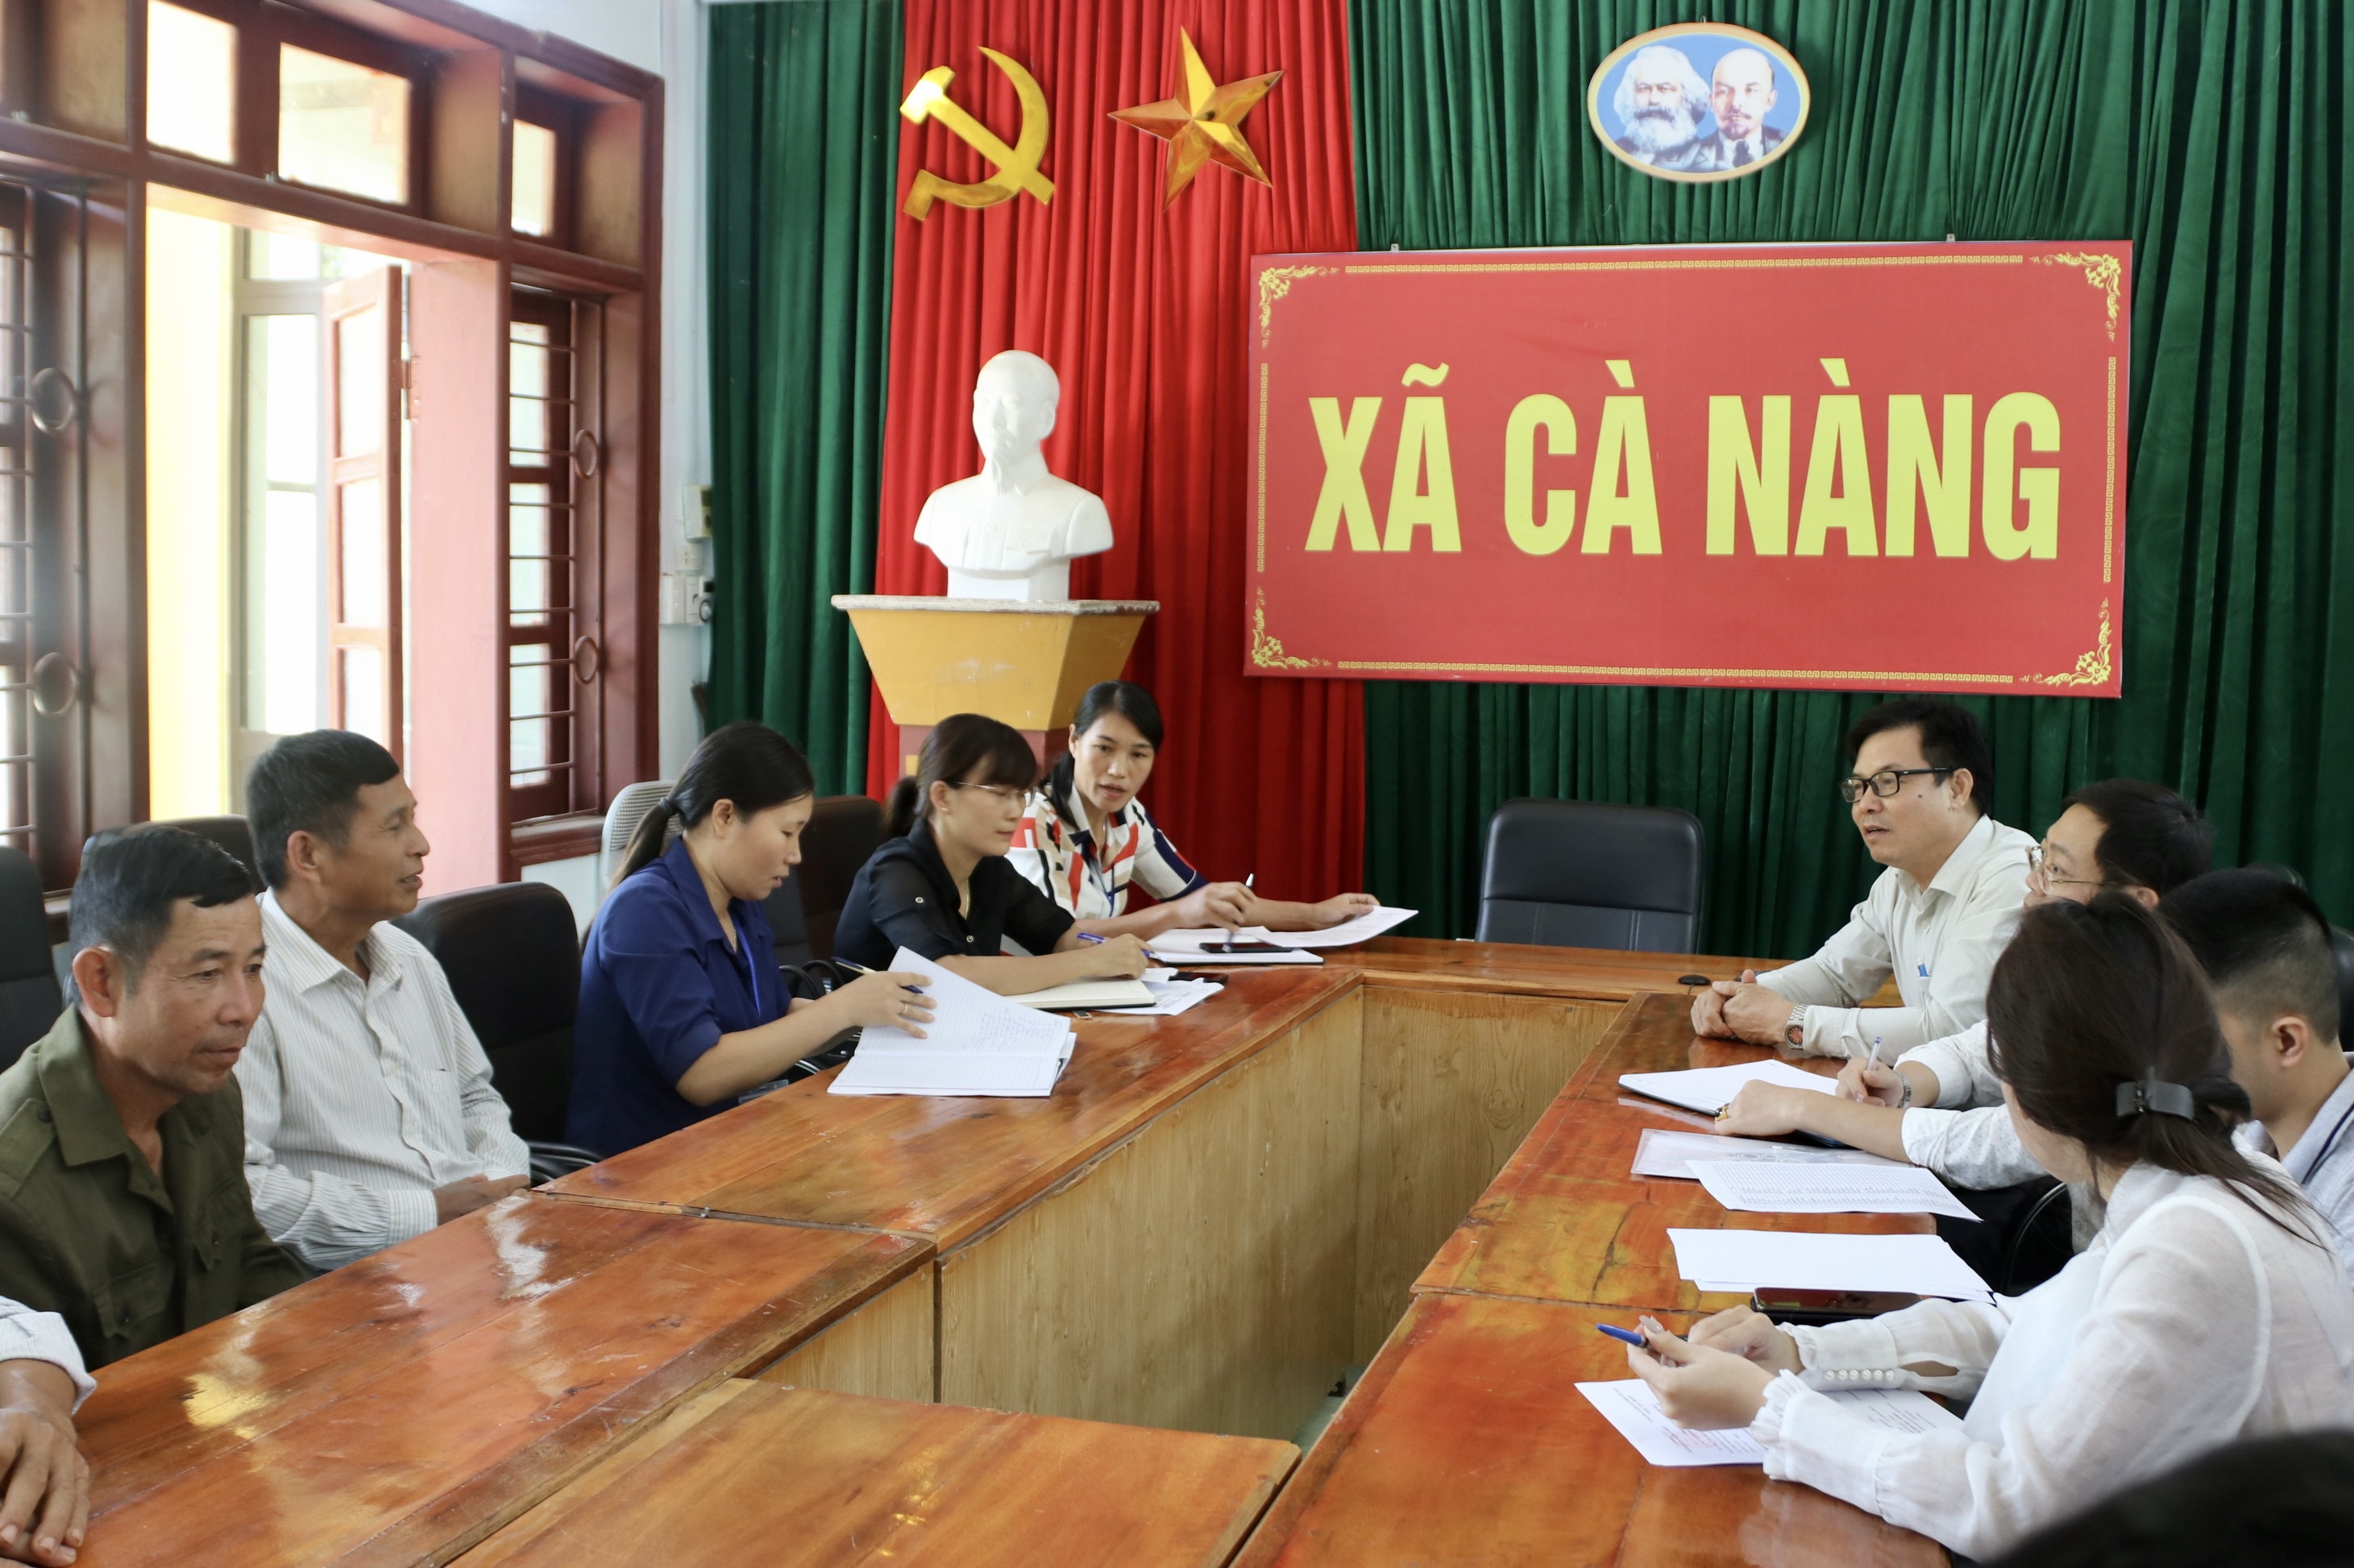 Đoàn Công tác Báo Dân tộc khảo sát tình hình phát hành báo cho người có uy tín tại xã Cà Nàng, huyện Quỳnh Nhai, Sơn La